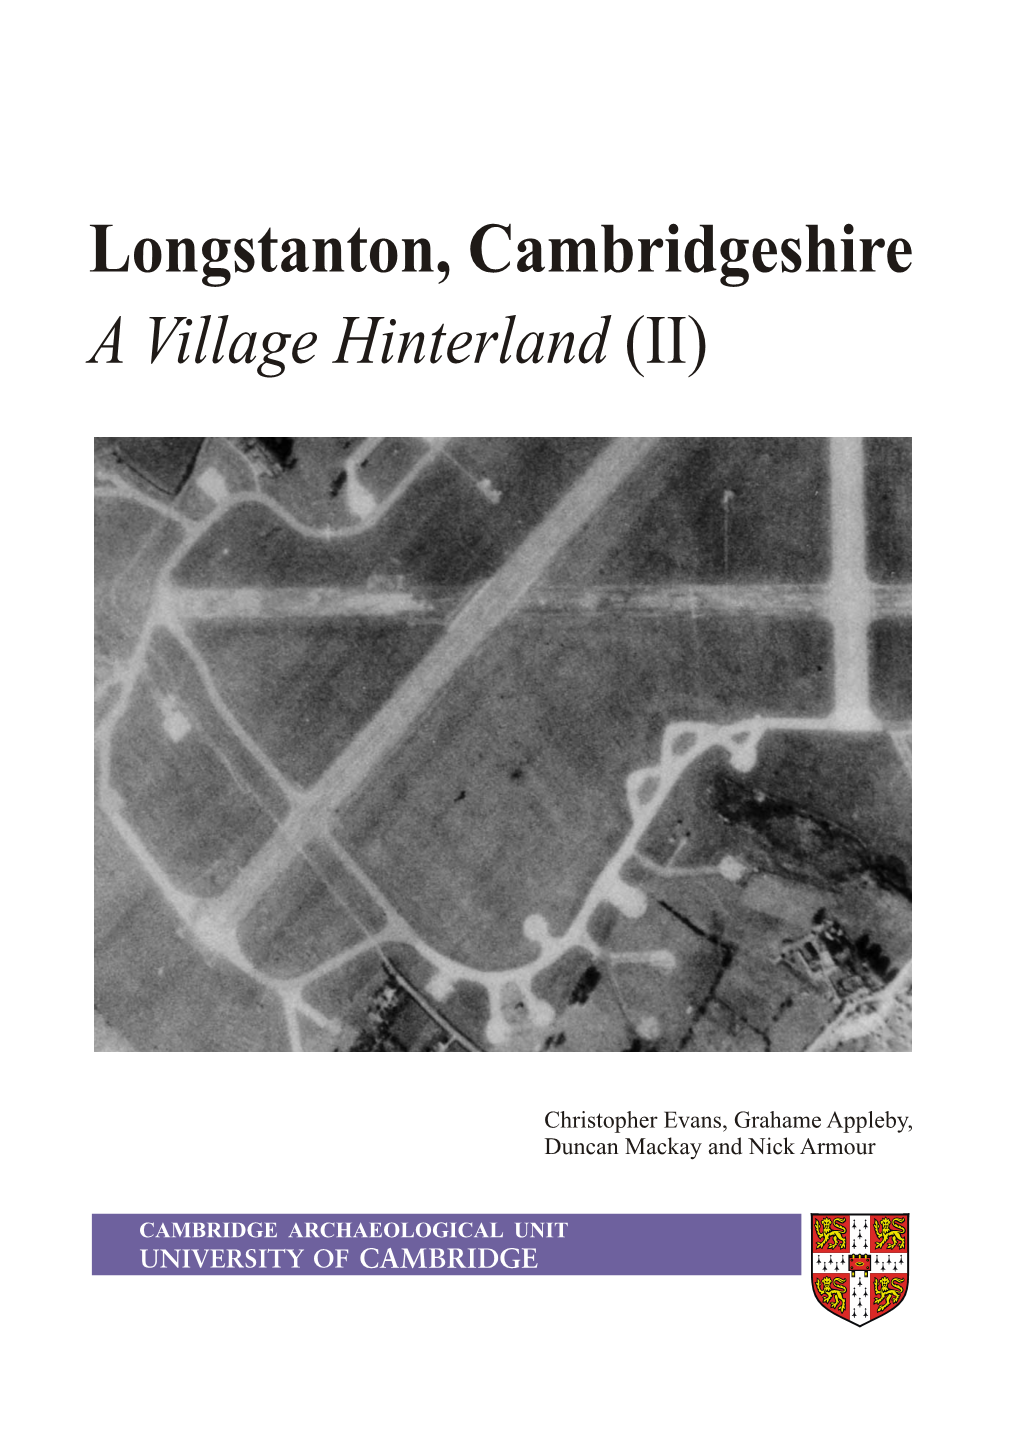 Longstanton, Cambridgeshire a Village Hinterland (II)